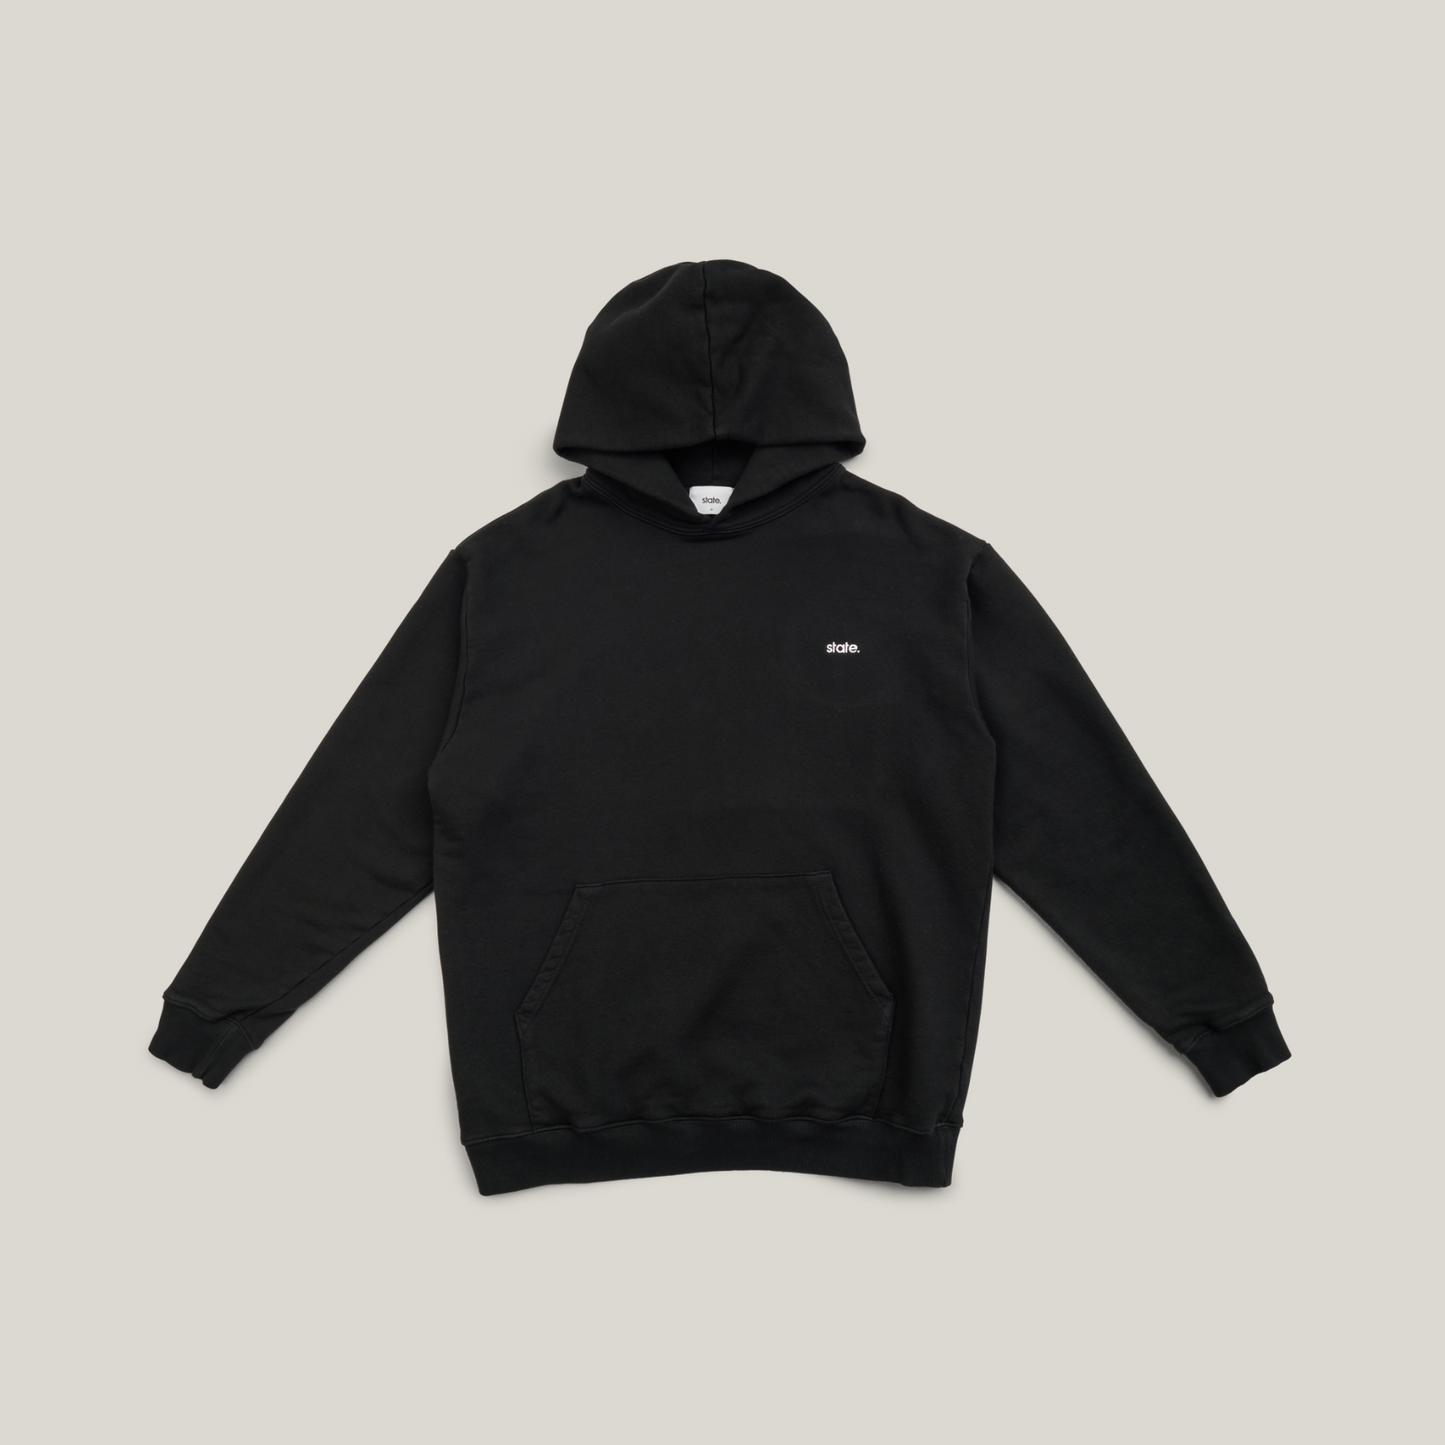 State logo hoodie - Black